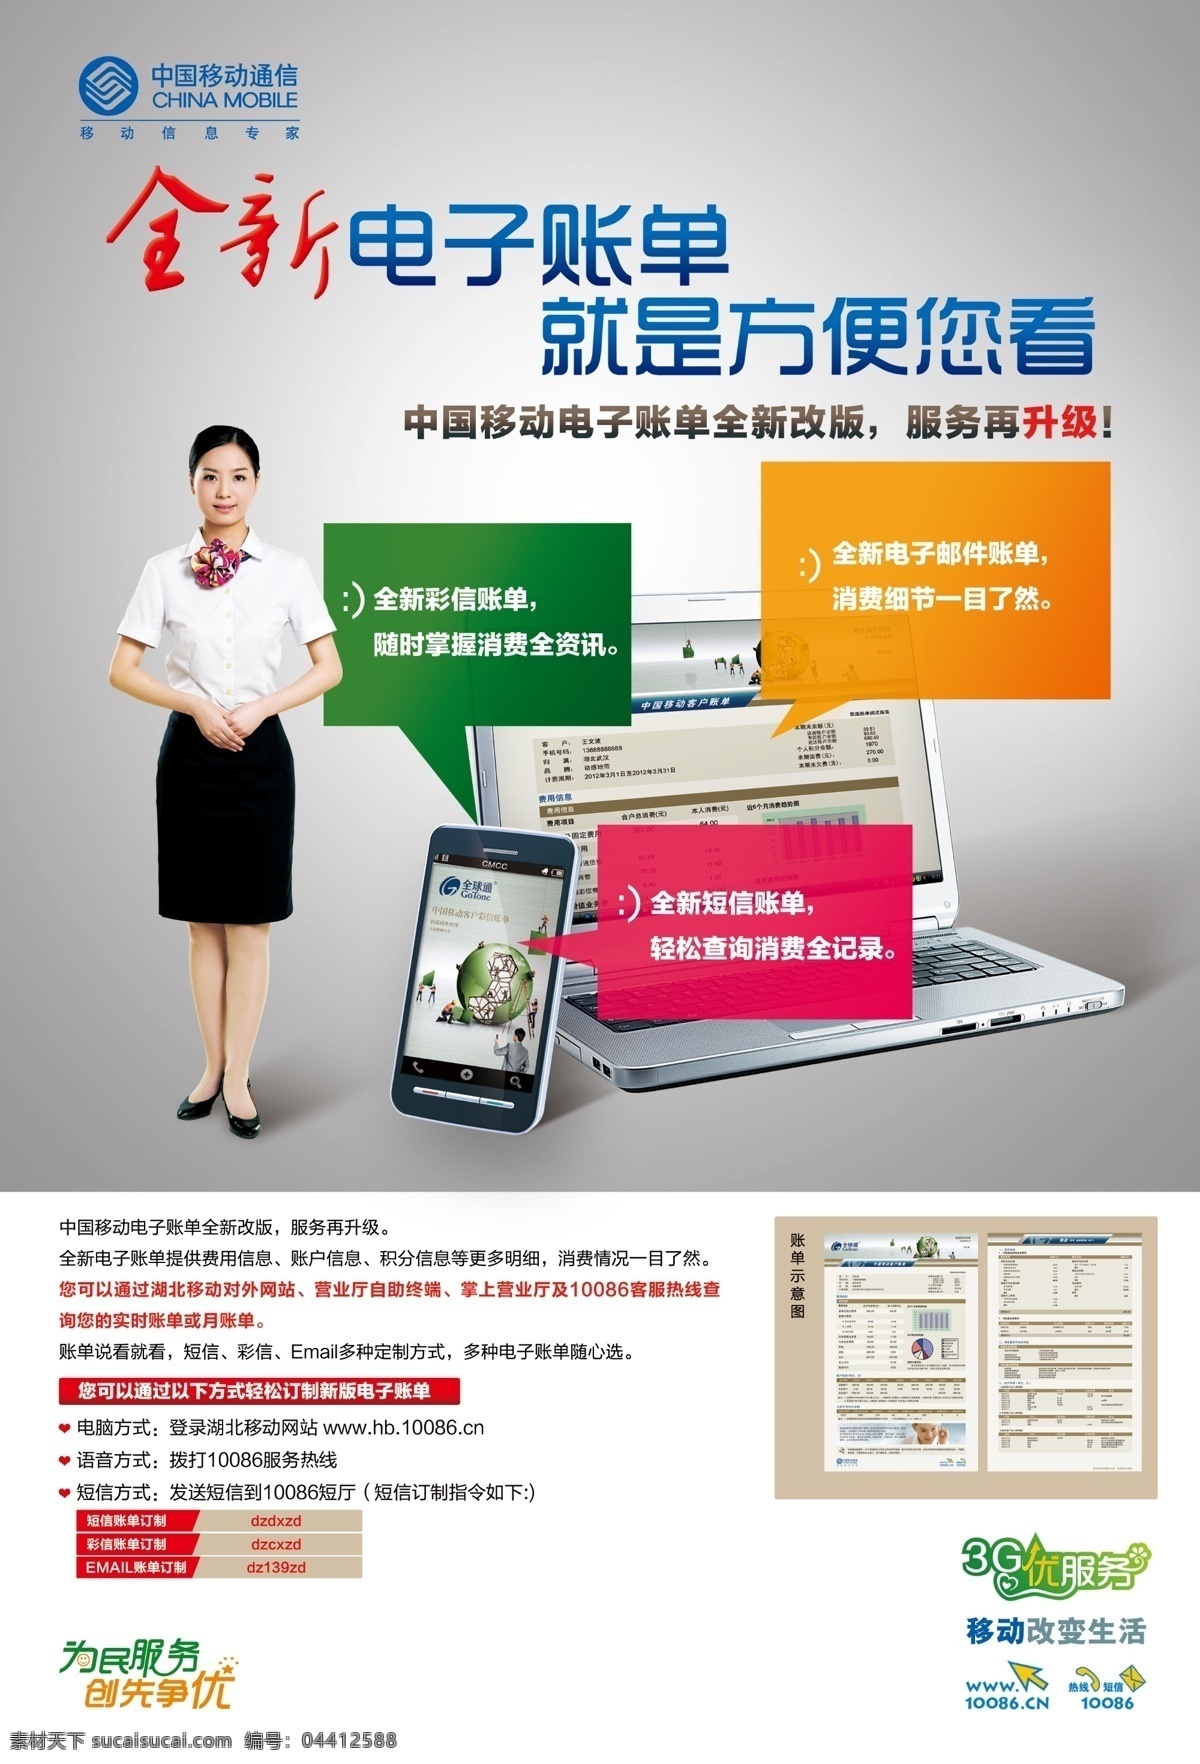 创先争优 电脑 广告设计模板 客服 美女 源文件 中国移动 电子 帐单 海报 电子帐单 为民服务 其他海报设计